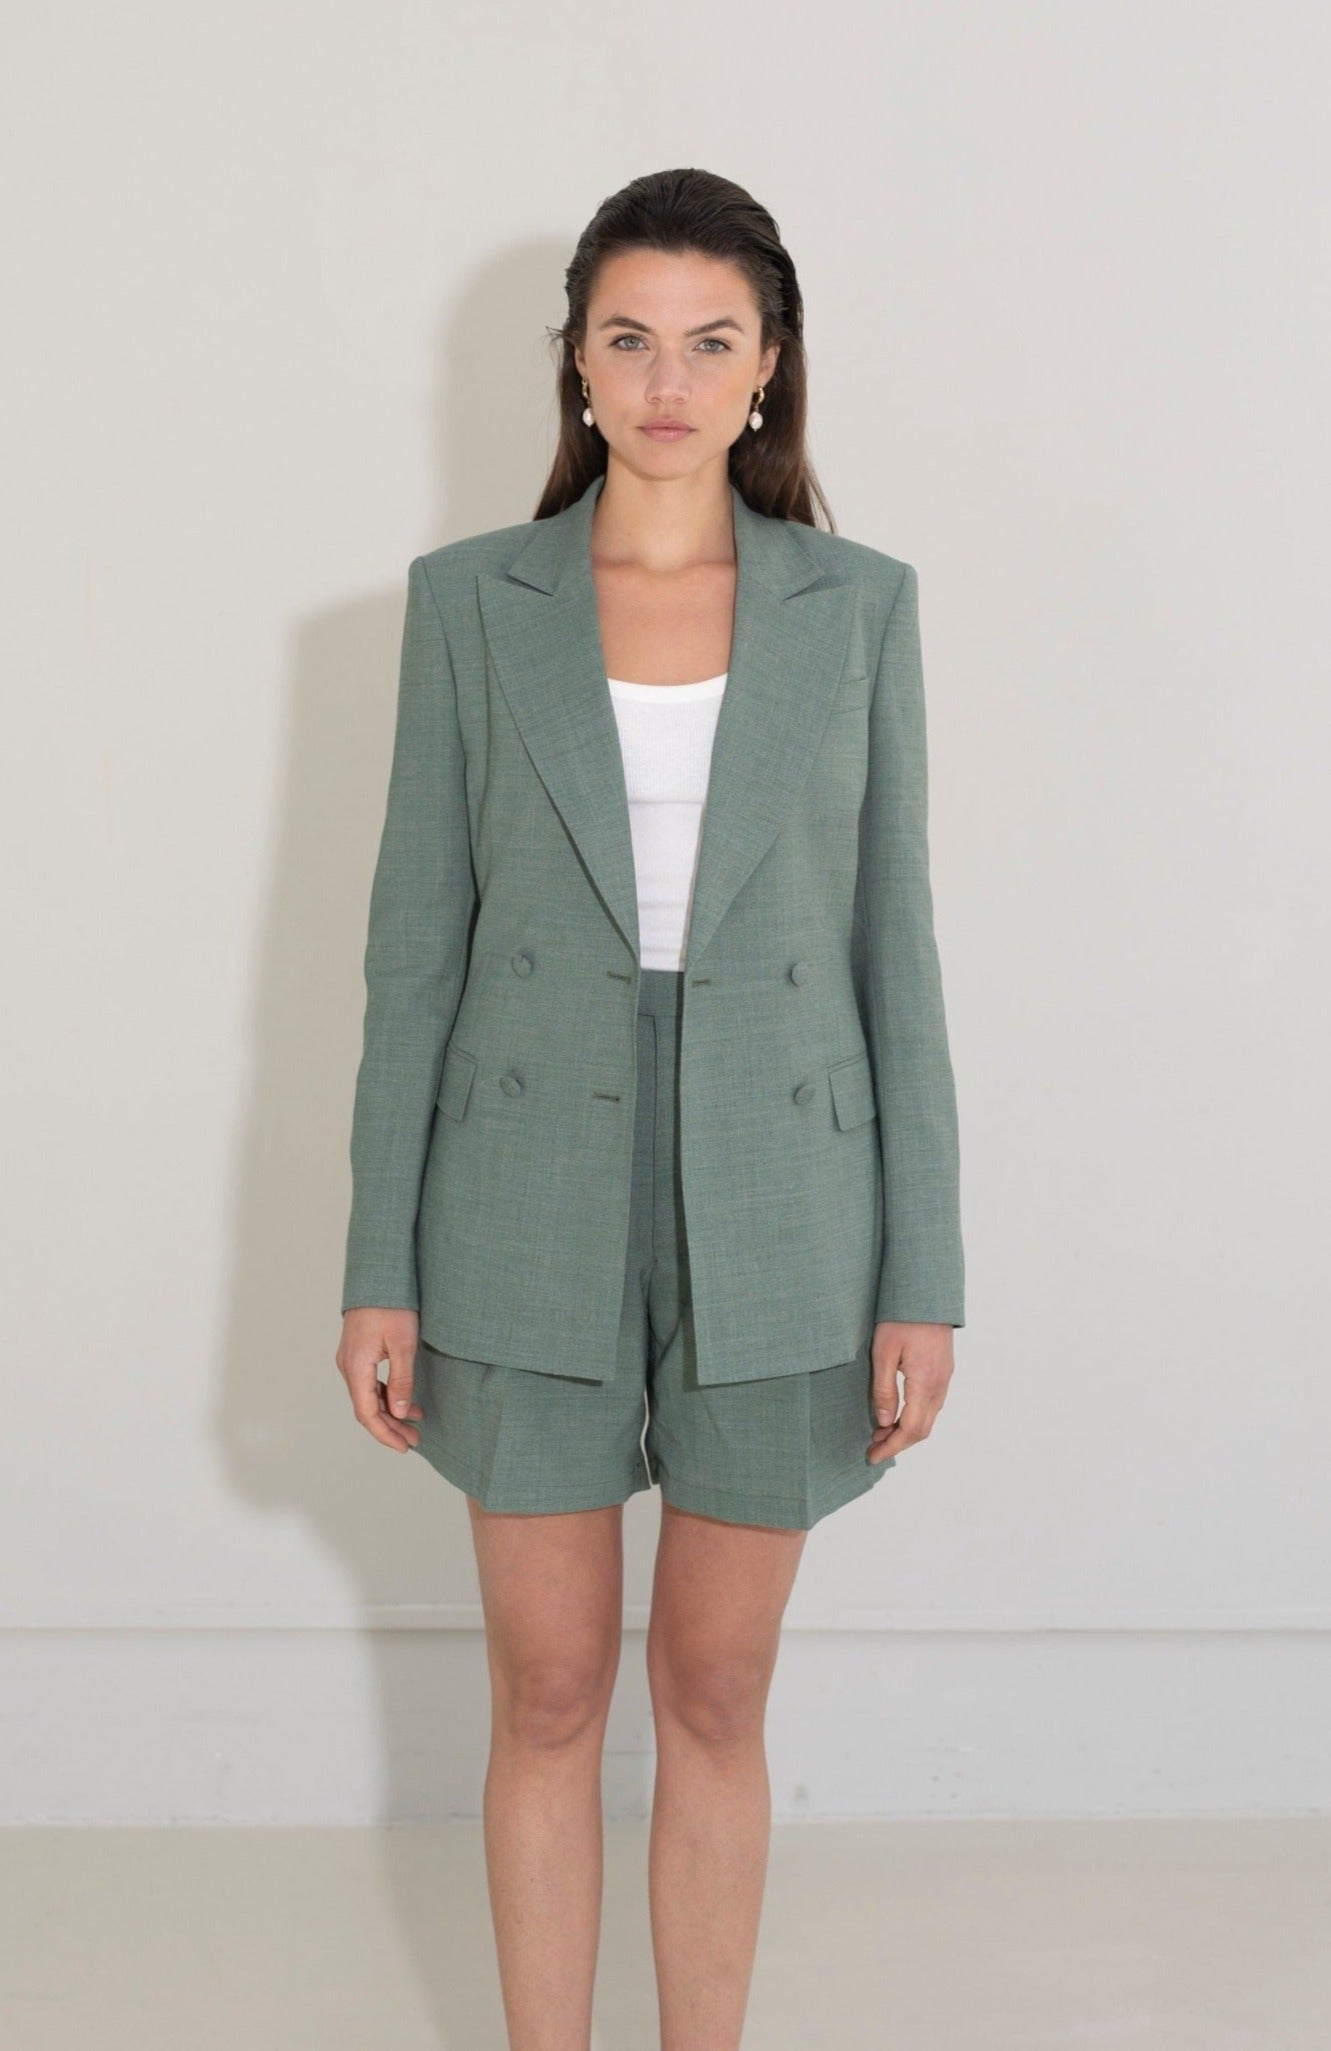 Green linen suit